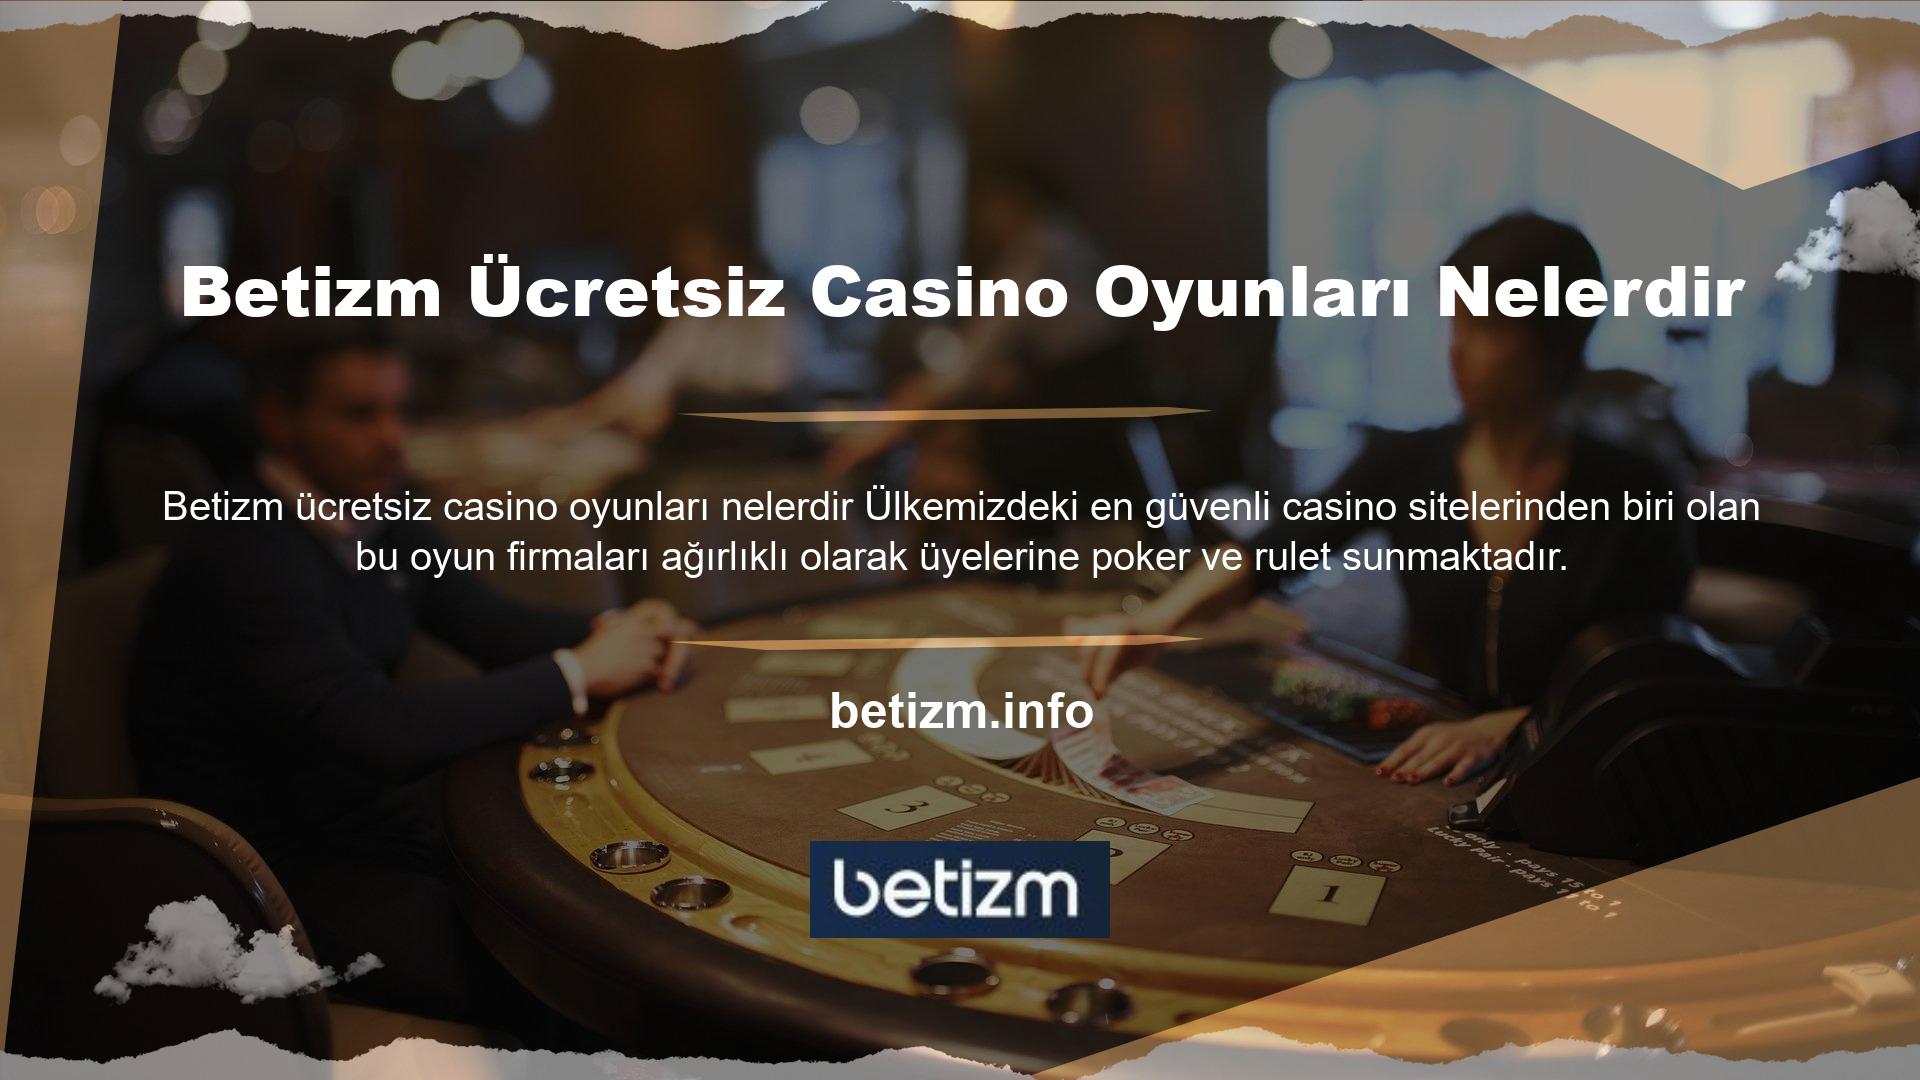 Avrupa Blackjack, Jackpot, Baccarat ve Casino Hold'em gibi oyunlar sunuyoruz